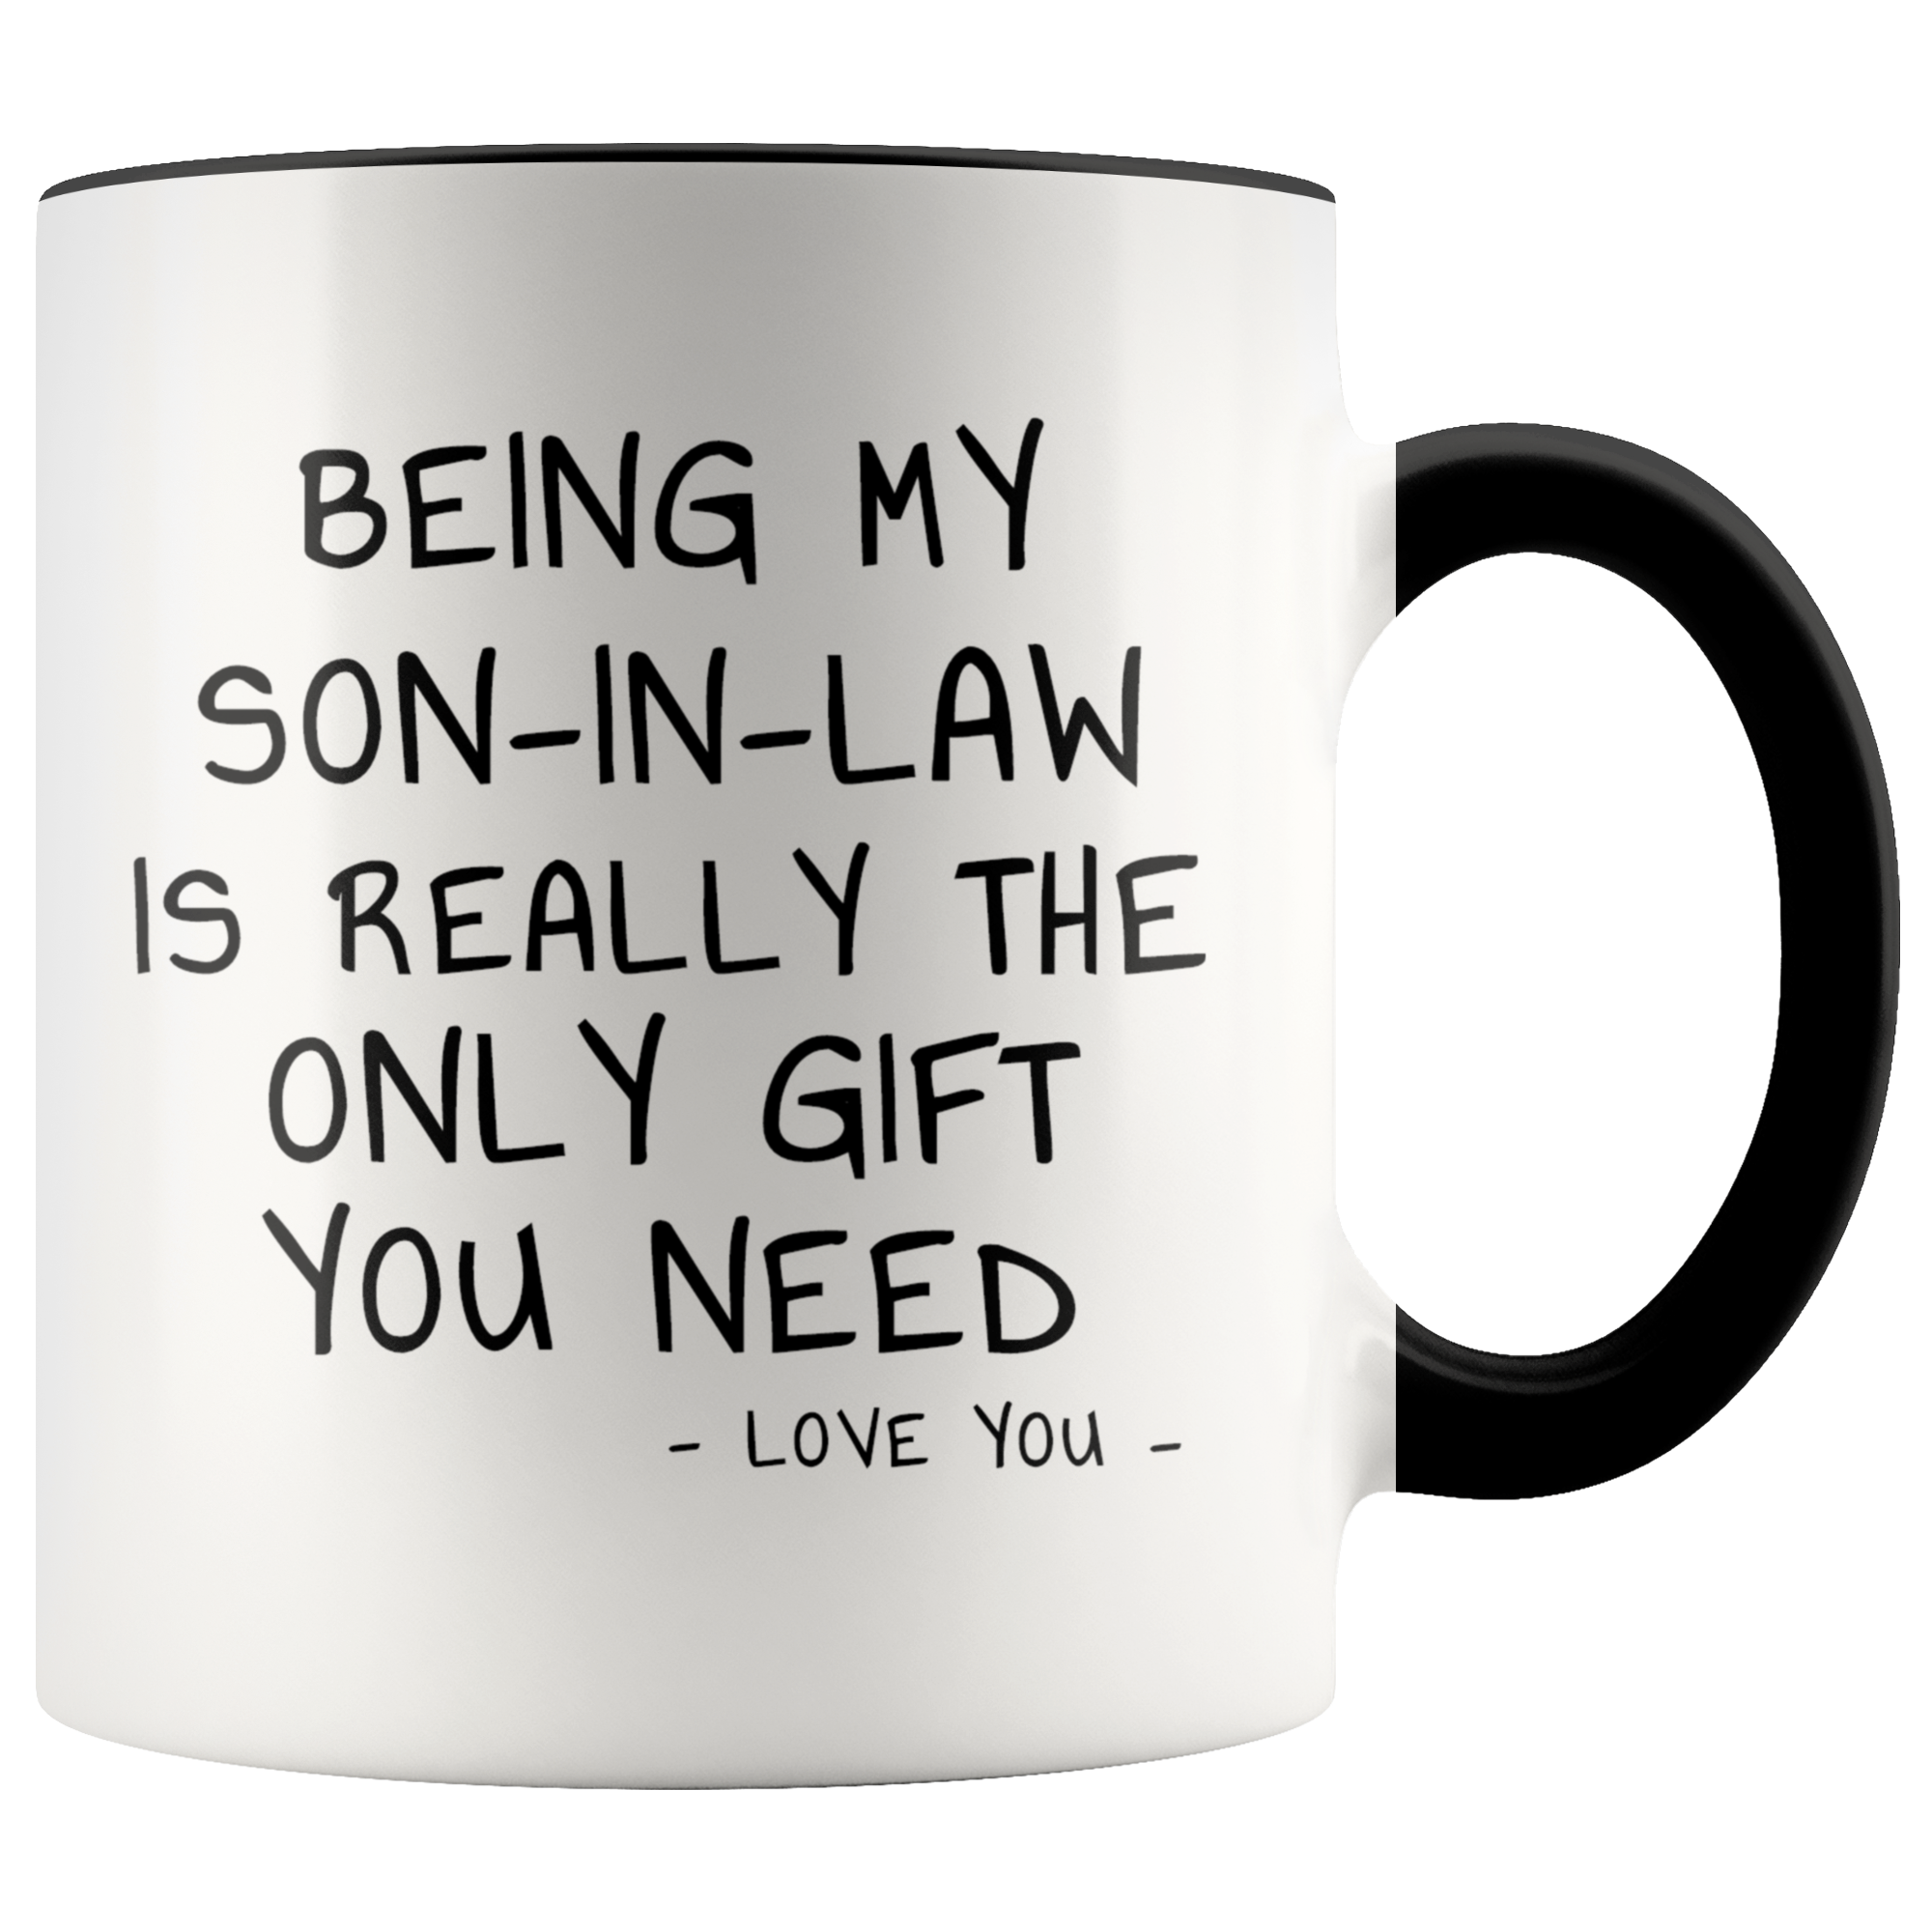 Funny Son-in-law Mug